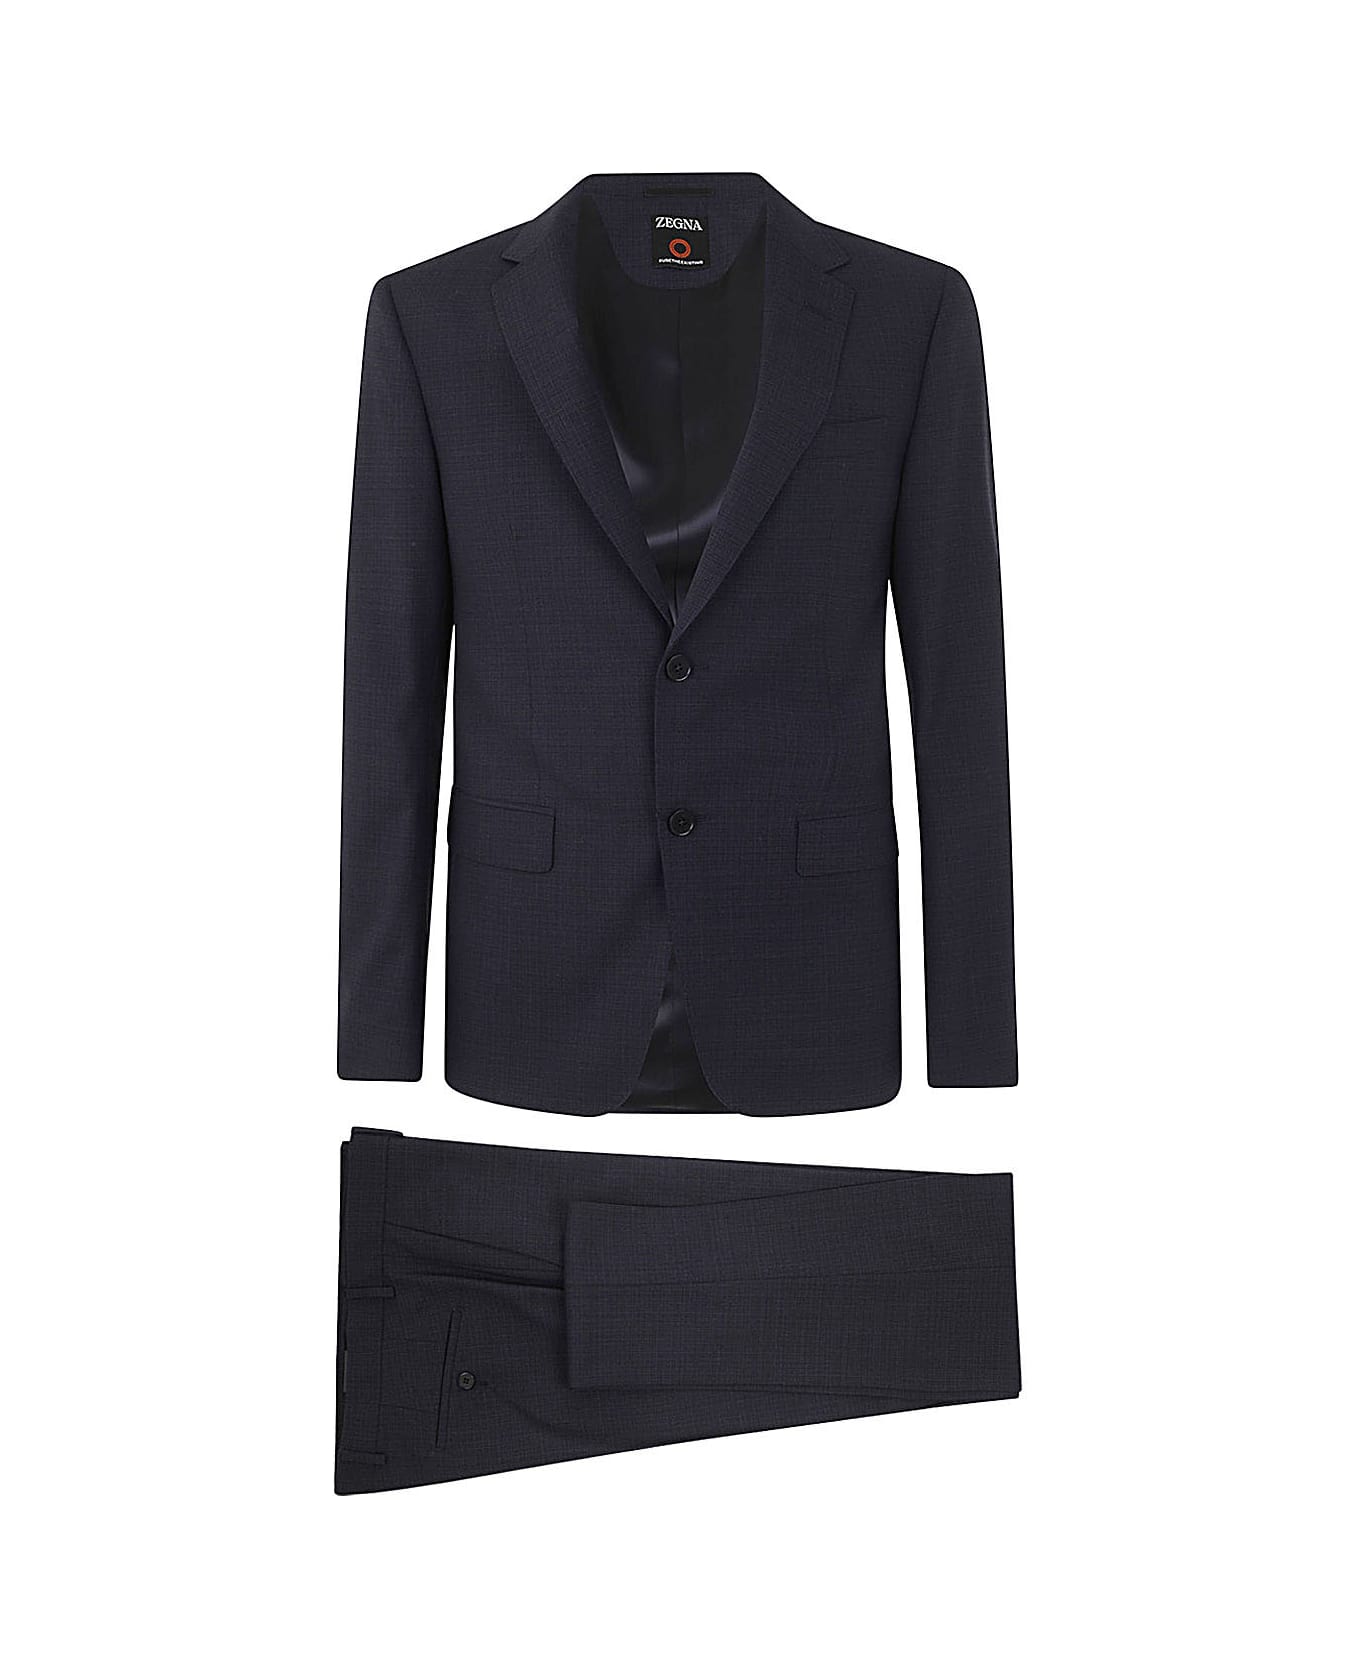 Zegna Usetheexisting Suit - Blue スーツ